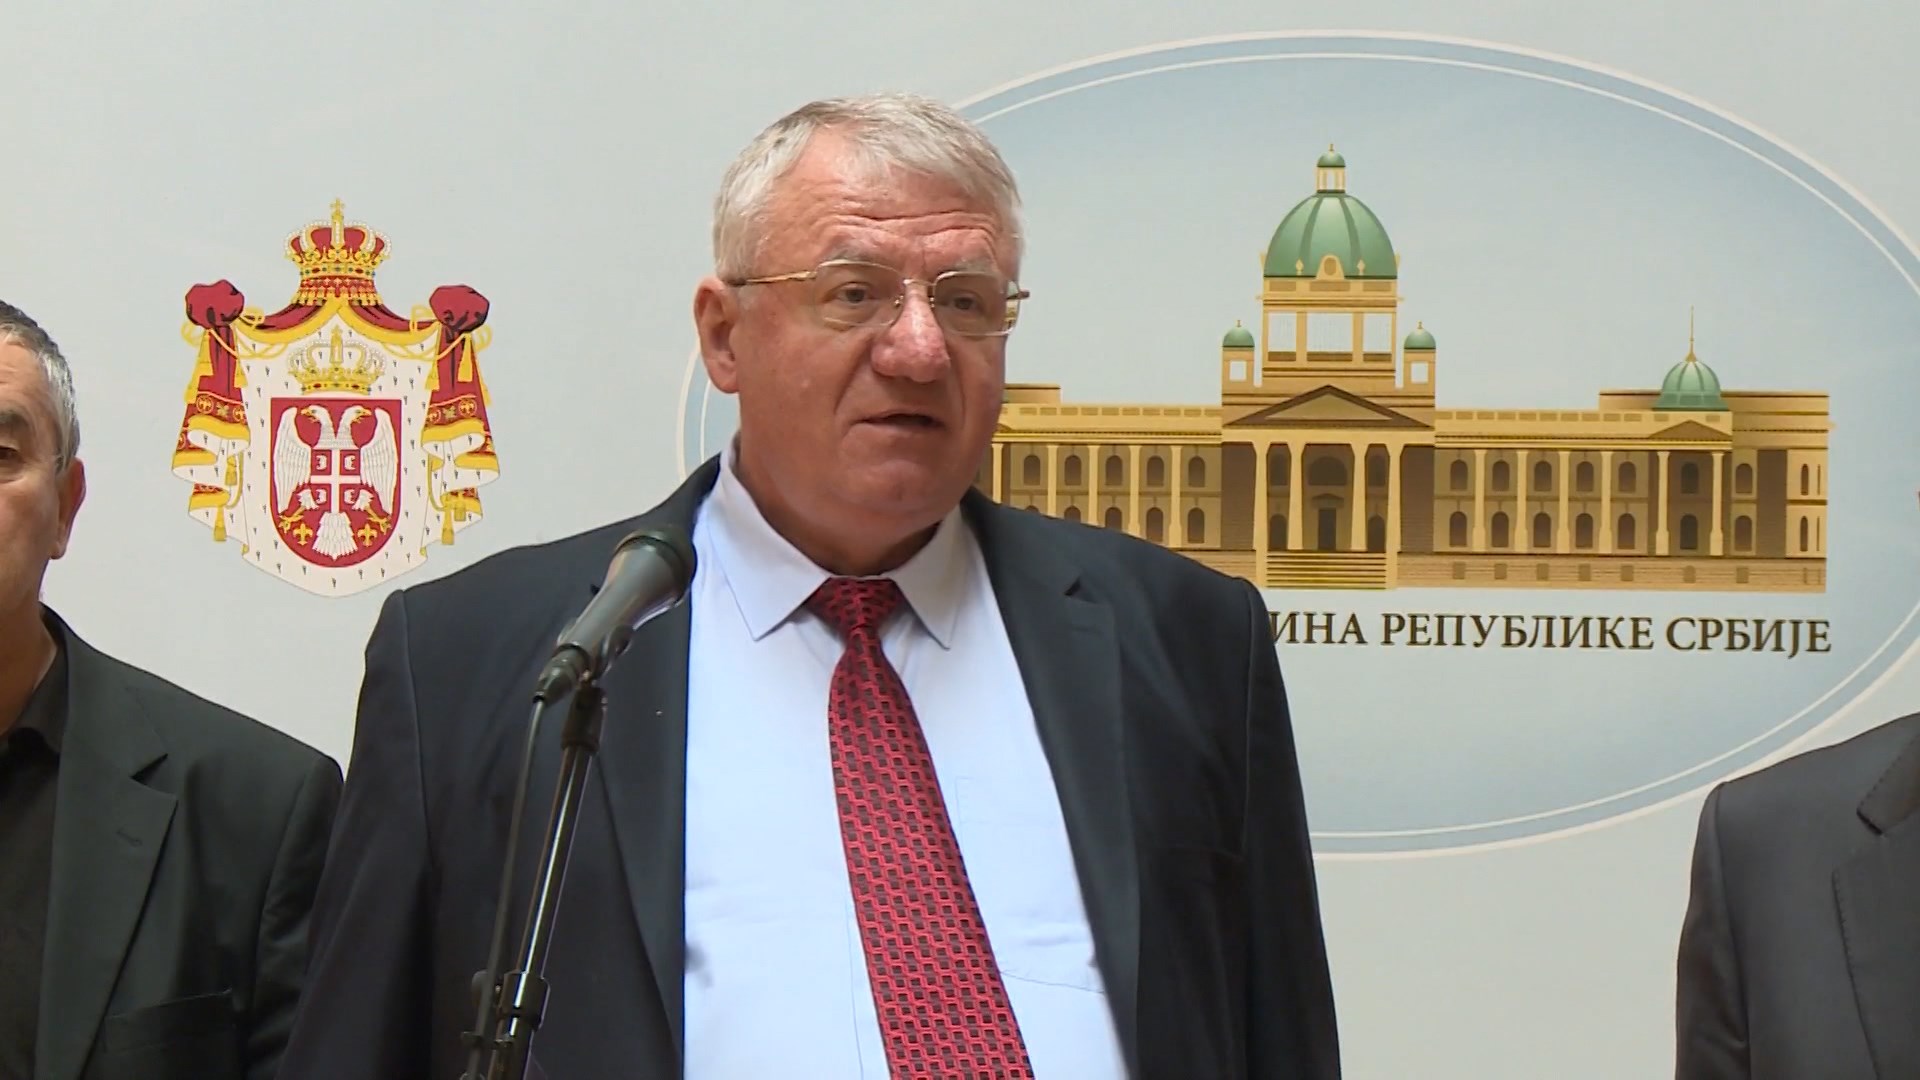 Σερβία: Ο εθνικιστής Σέσελι ποδοπάτησε την κροατική σημαία ενώπιον Κροατών βουλευτών